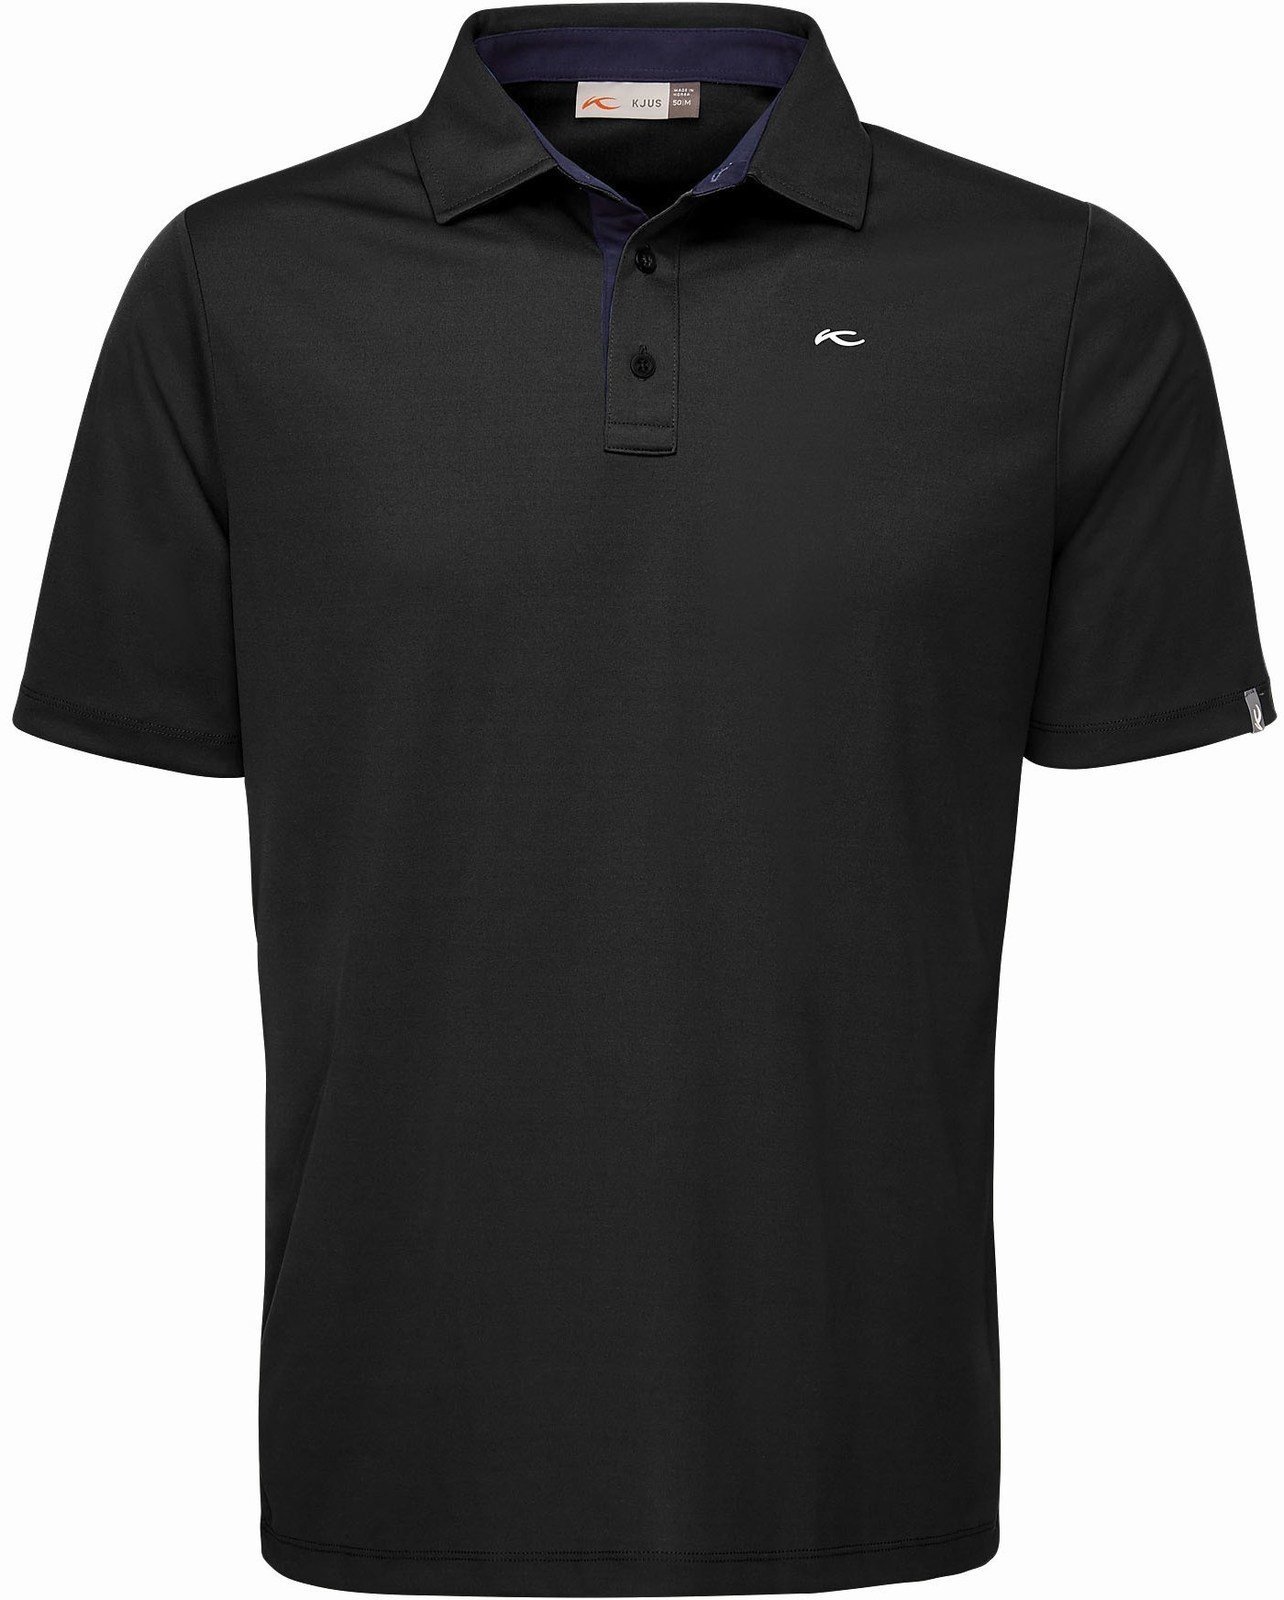 Polo Shirt Kjus Silas Mens Polo Shirt Black/Atlanta Blue 54